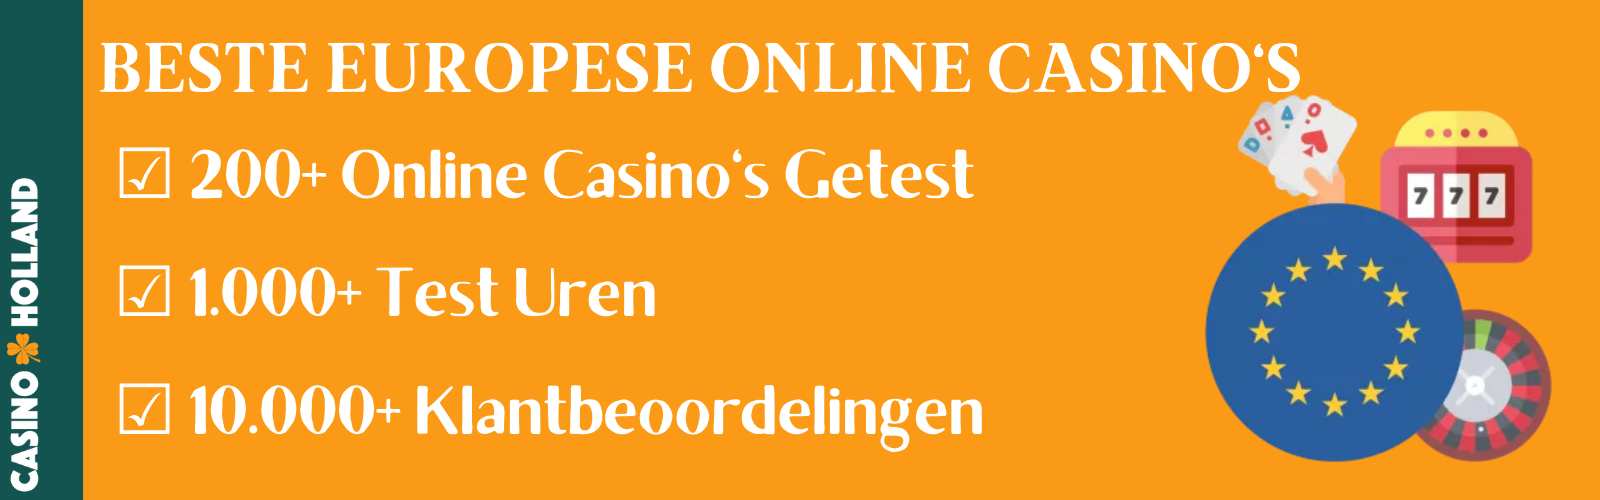 beste online casino's Europa